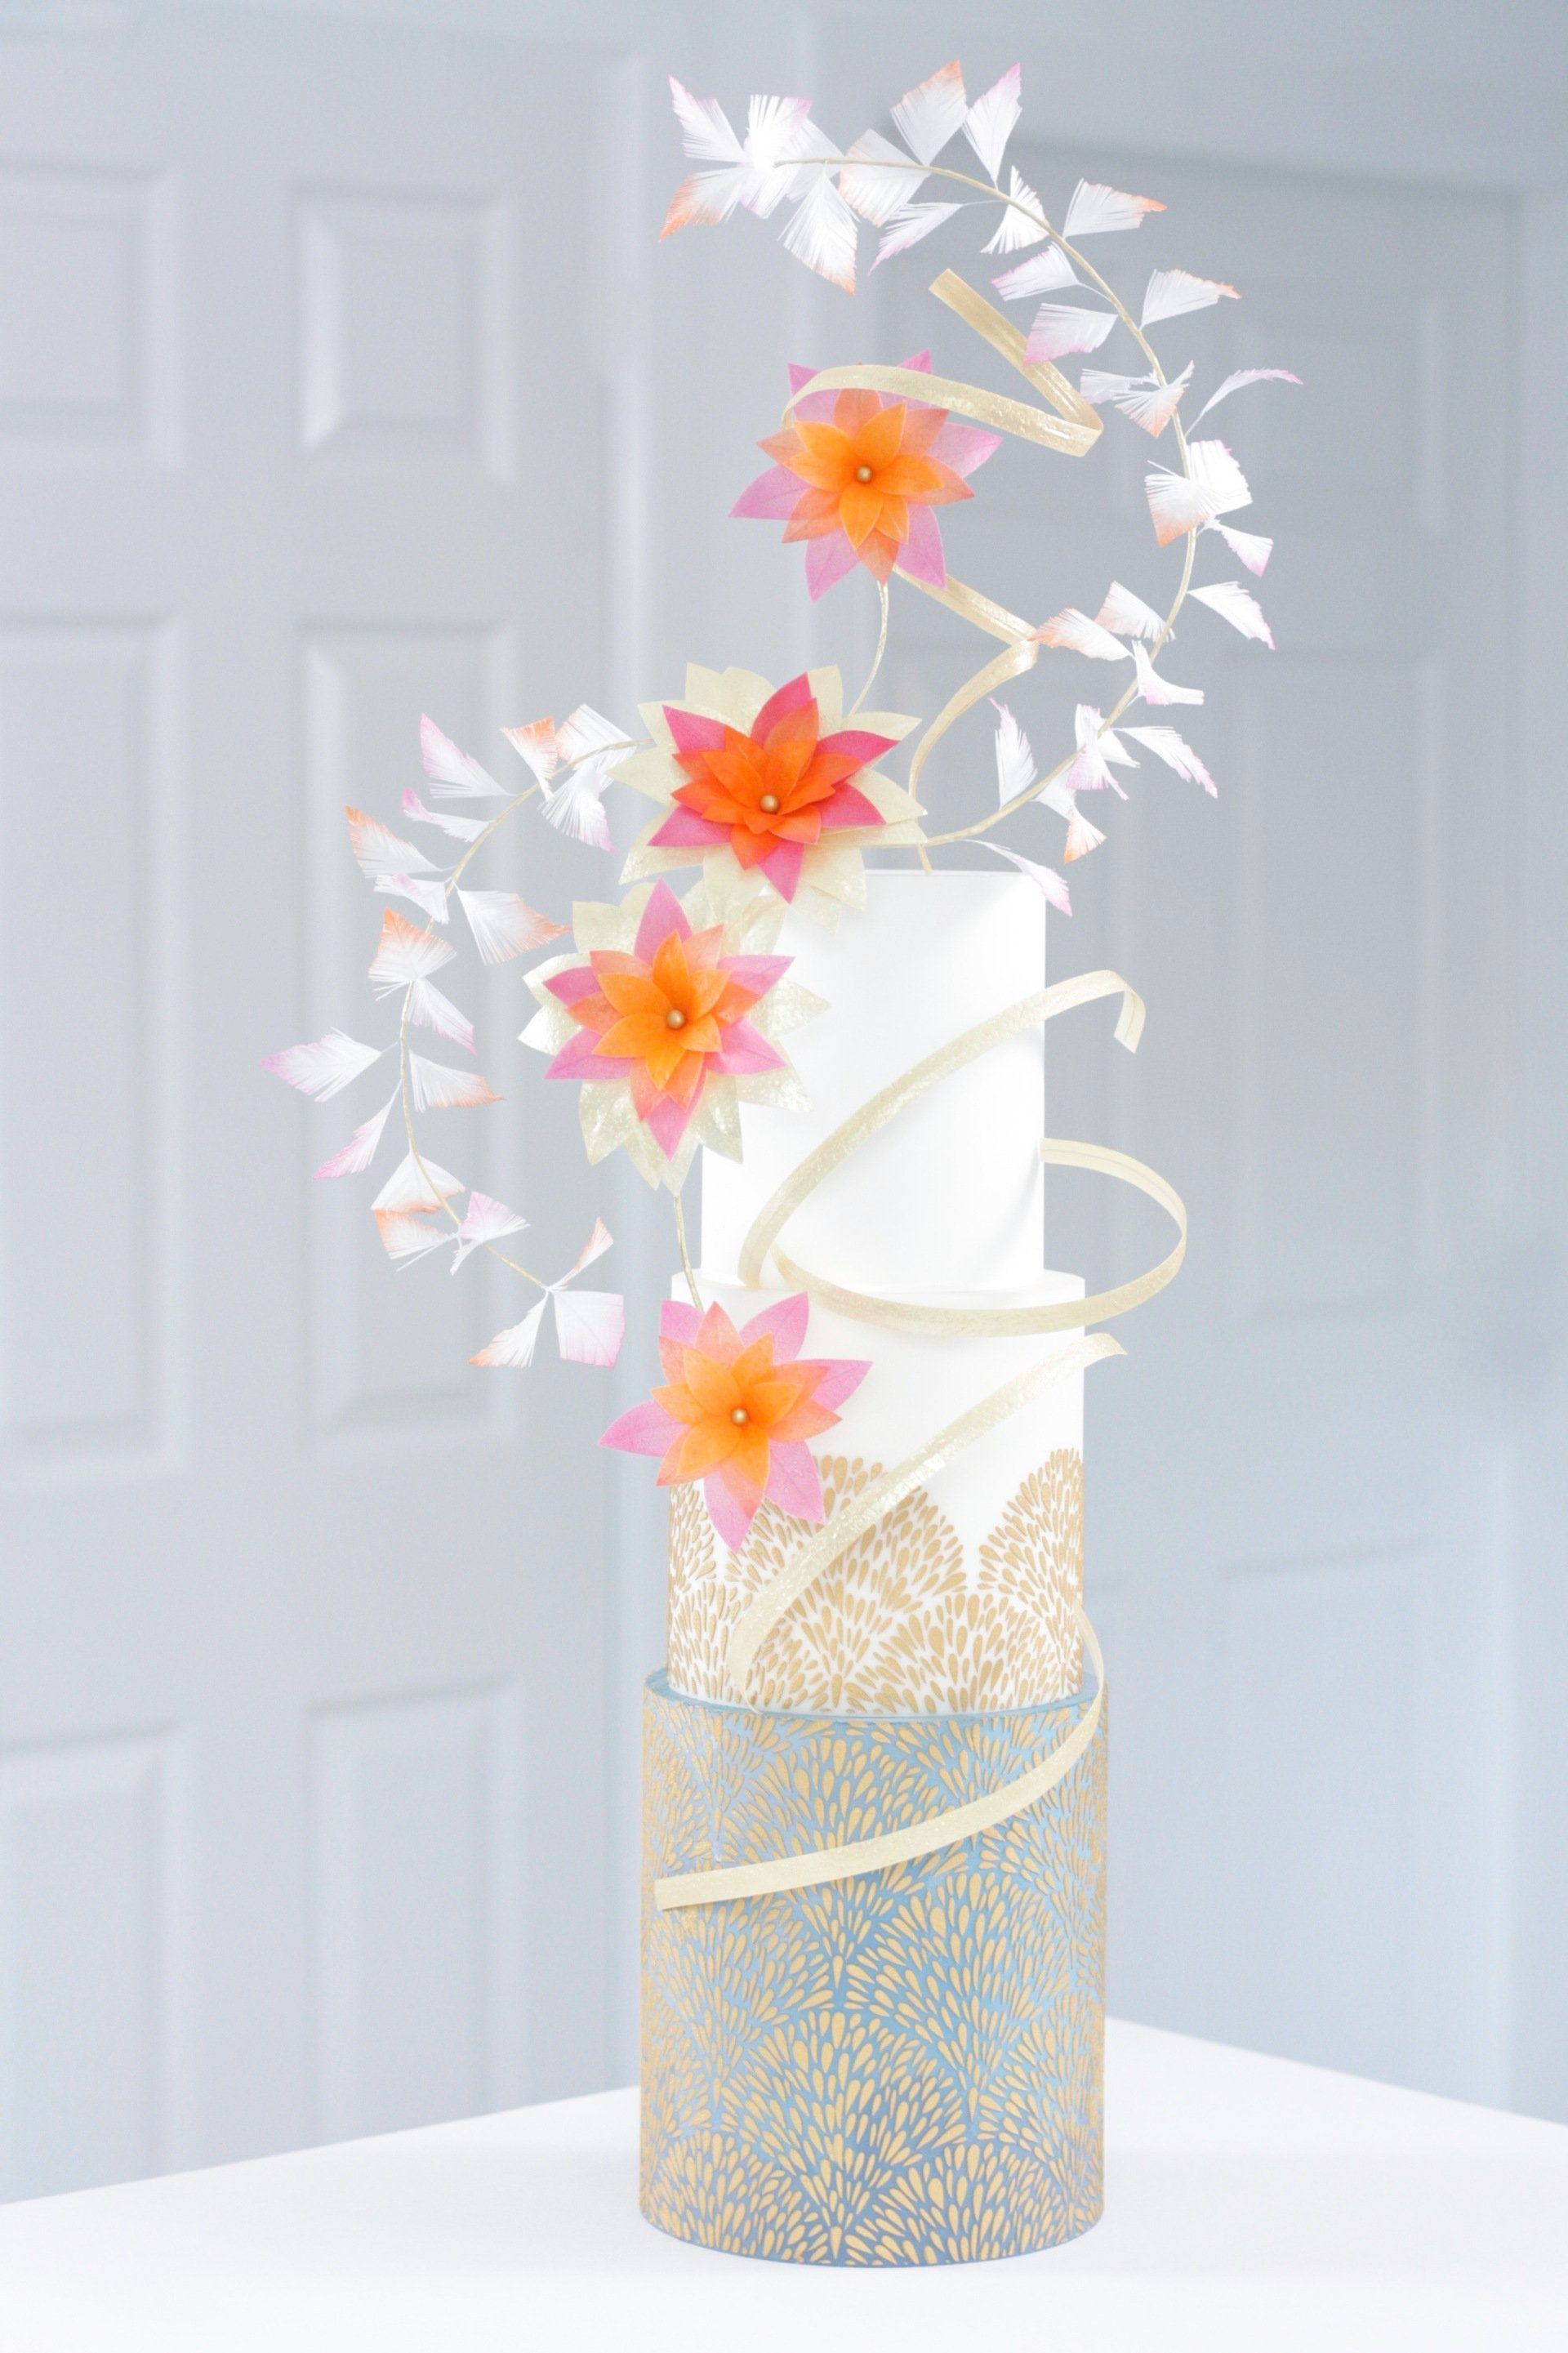 Wafer paper flower fan stencil cake